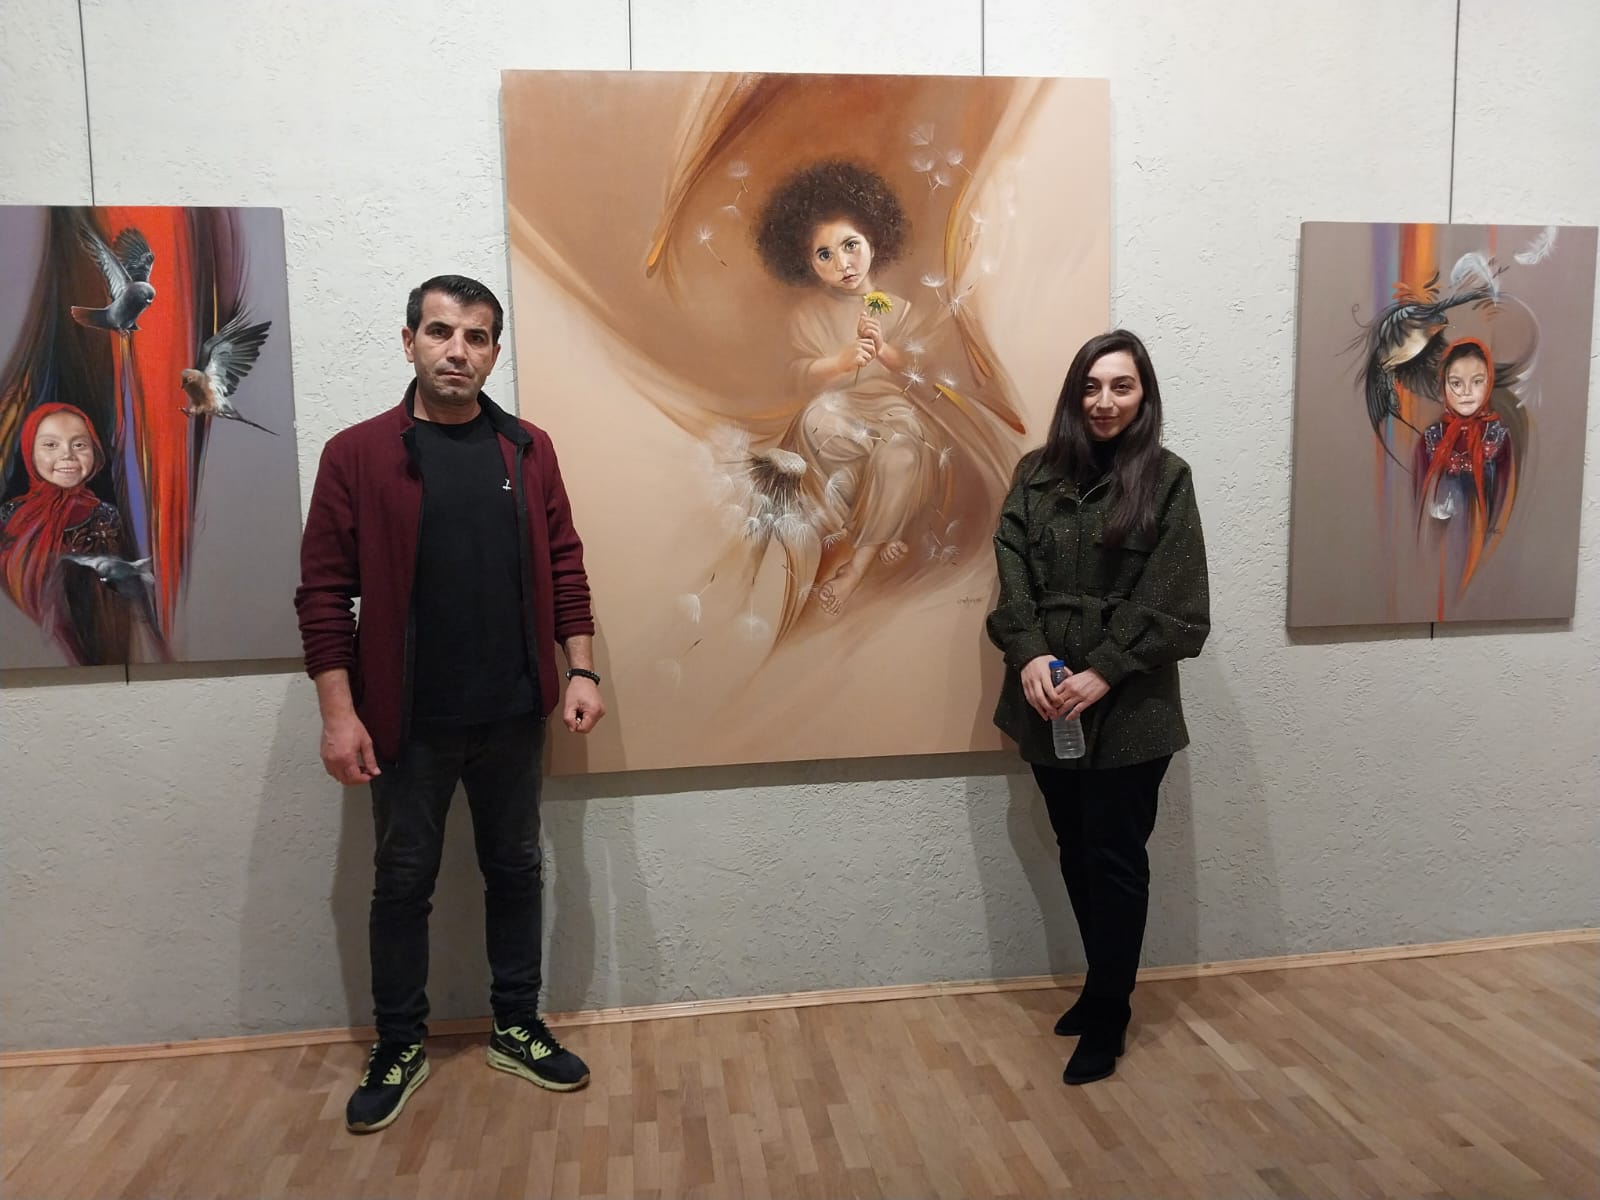 Trabzonlu resim sanatçısı Esra Aydın ilk kişisel sergisini memleketi Trabzon’da açtı (5)